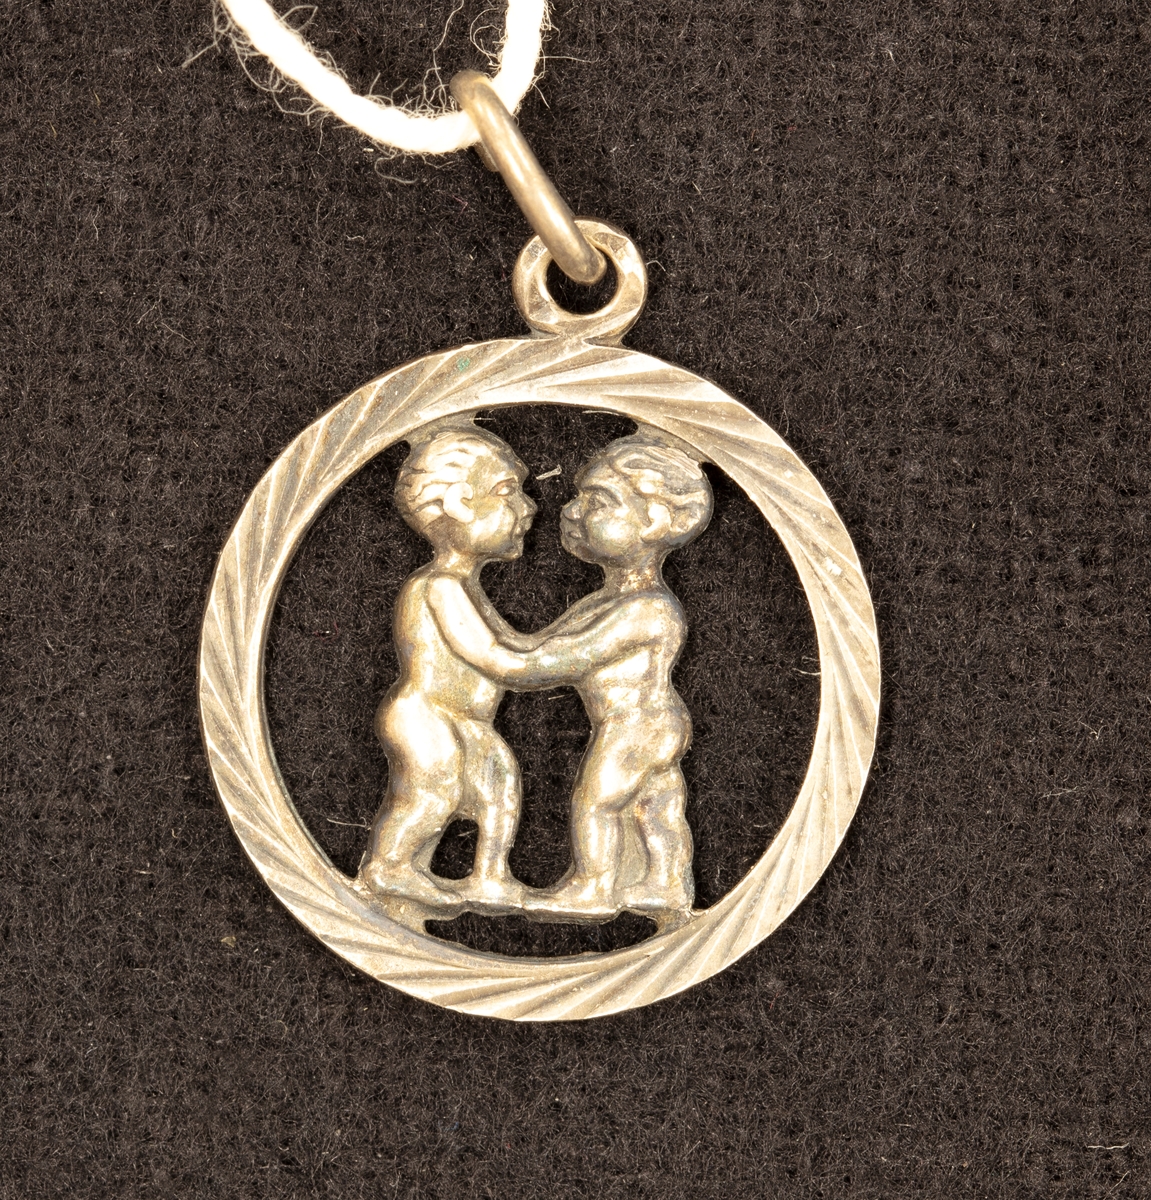 Hängberlock av silver 0,835 visande tvillingarnas stjärntecken i genombrutet mönster. Diam. 1,8 cm.

Ingår i en samling smycken som givaren köpt på auktion eller hos antikhandlare.